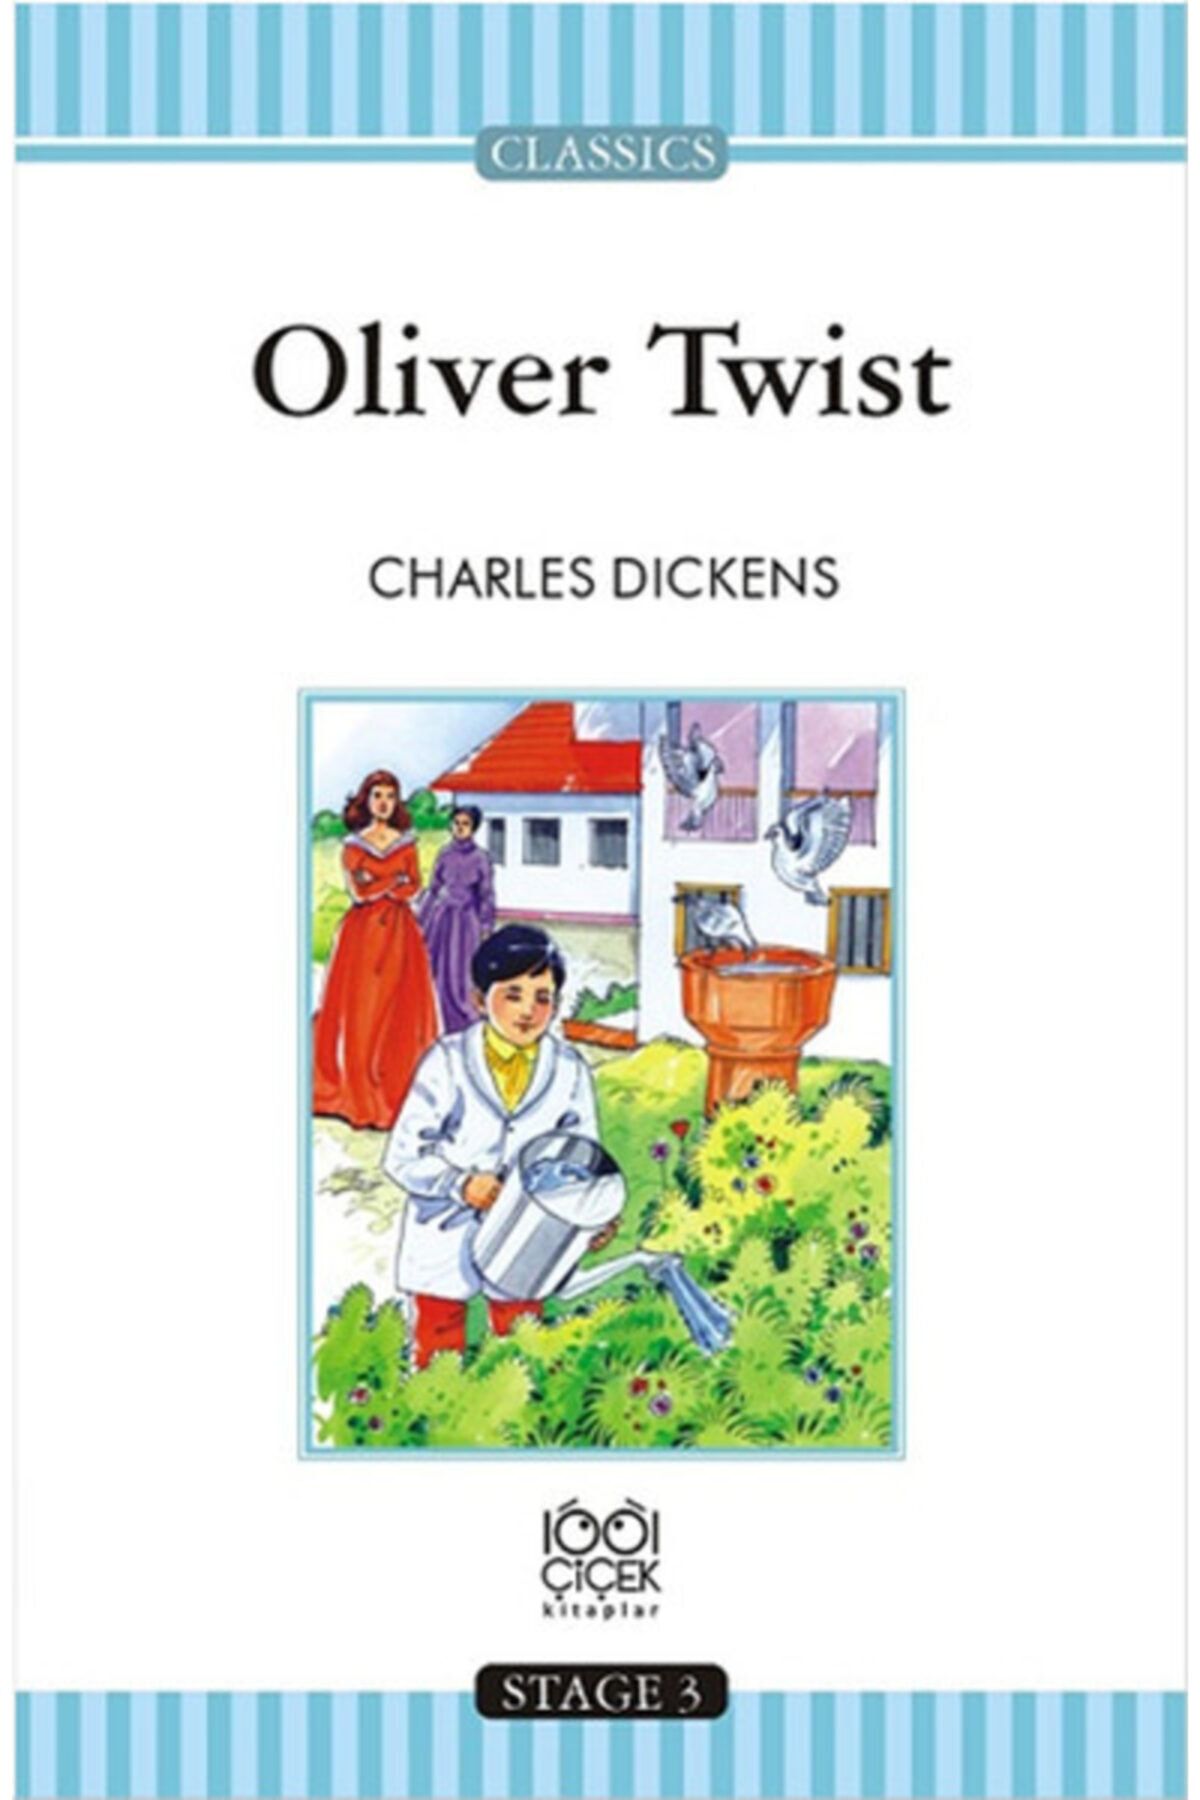 1001 Çiçek Kitaplar Atlasavm Oliver Twist - Stage 3